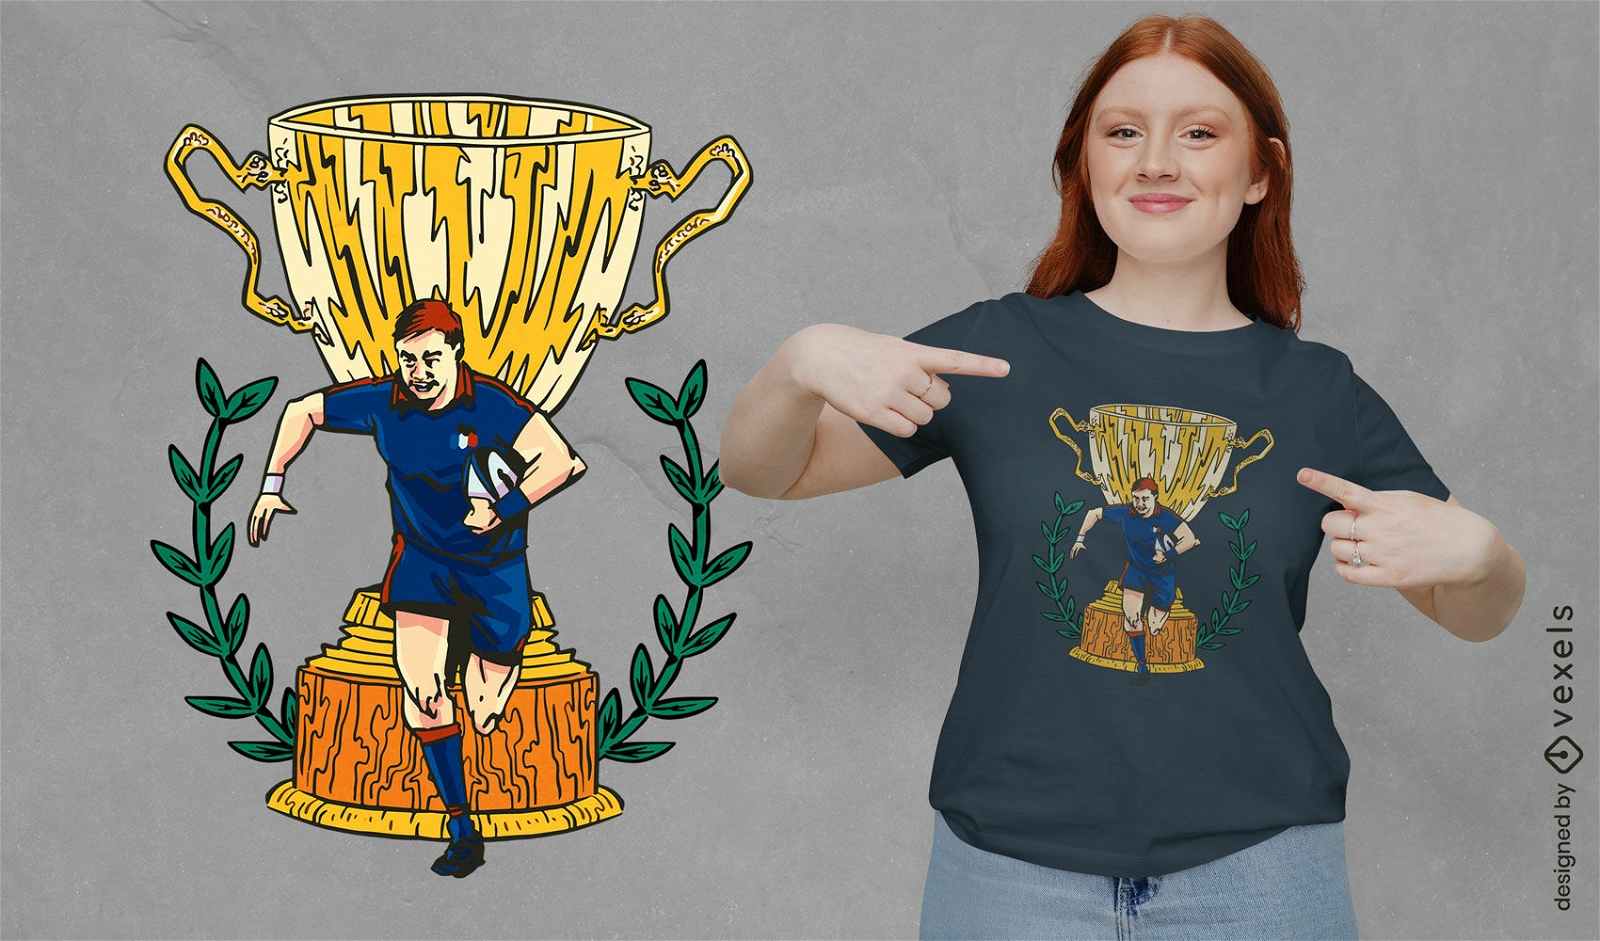 Dise?o de camiseta de jugador de rugby franc?s y trofeo.